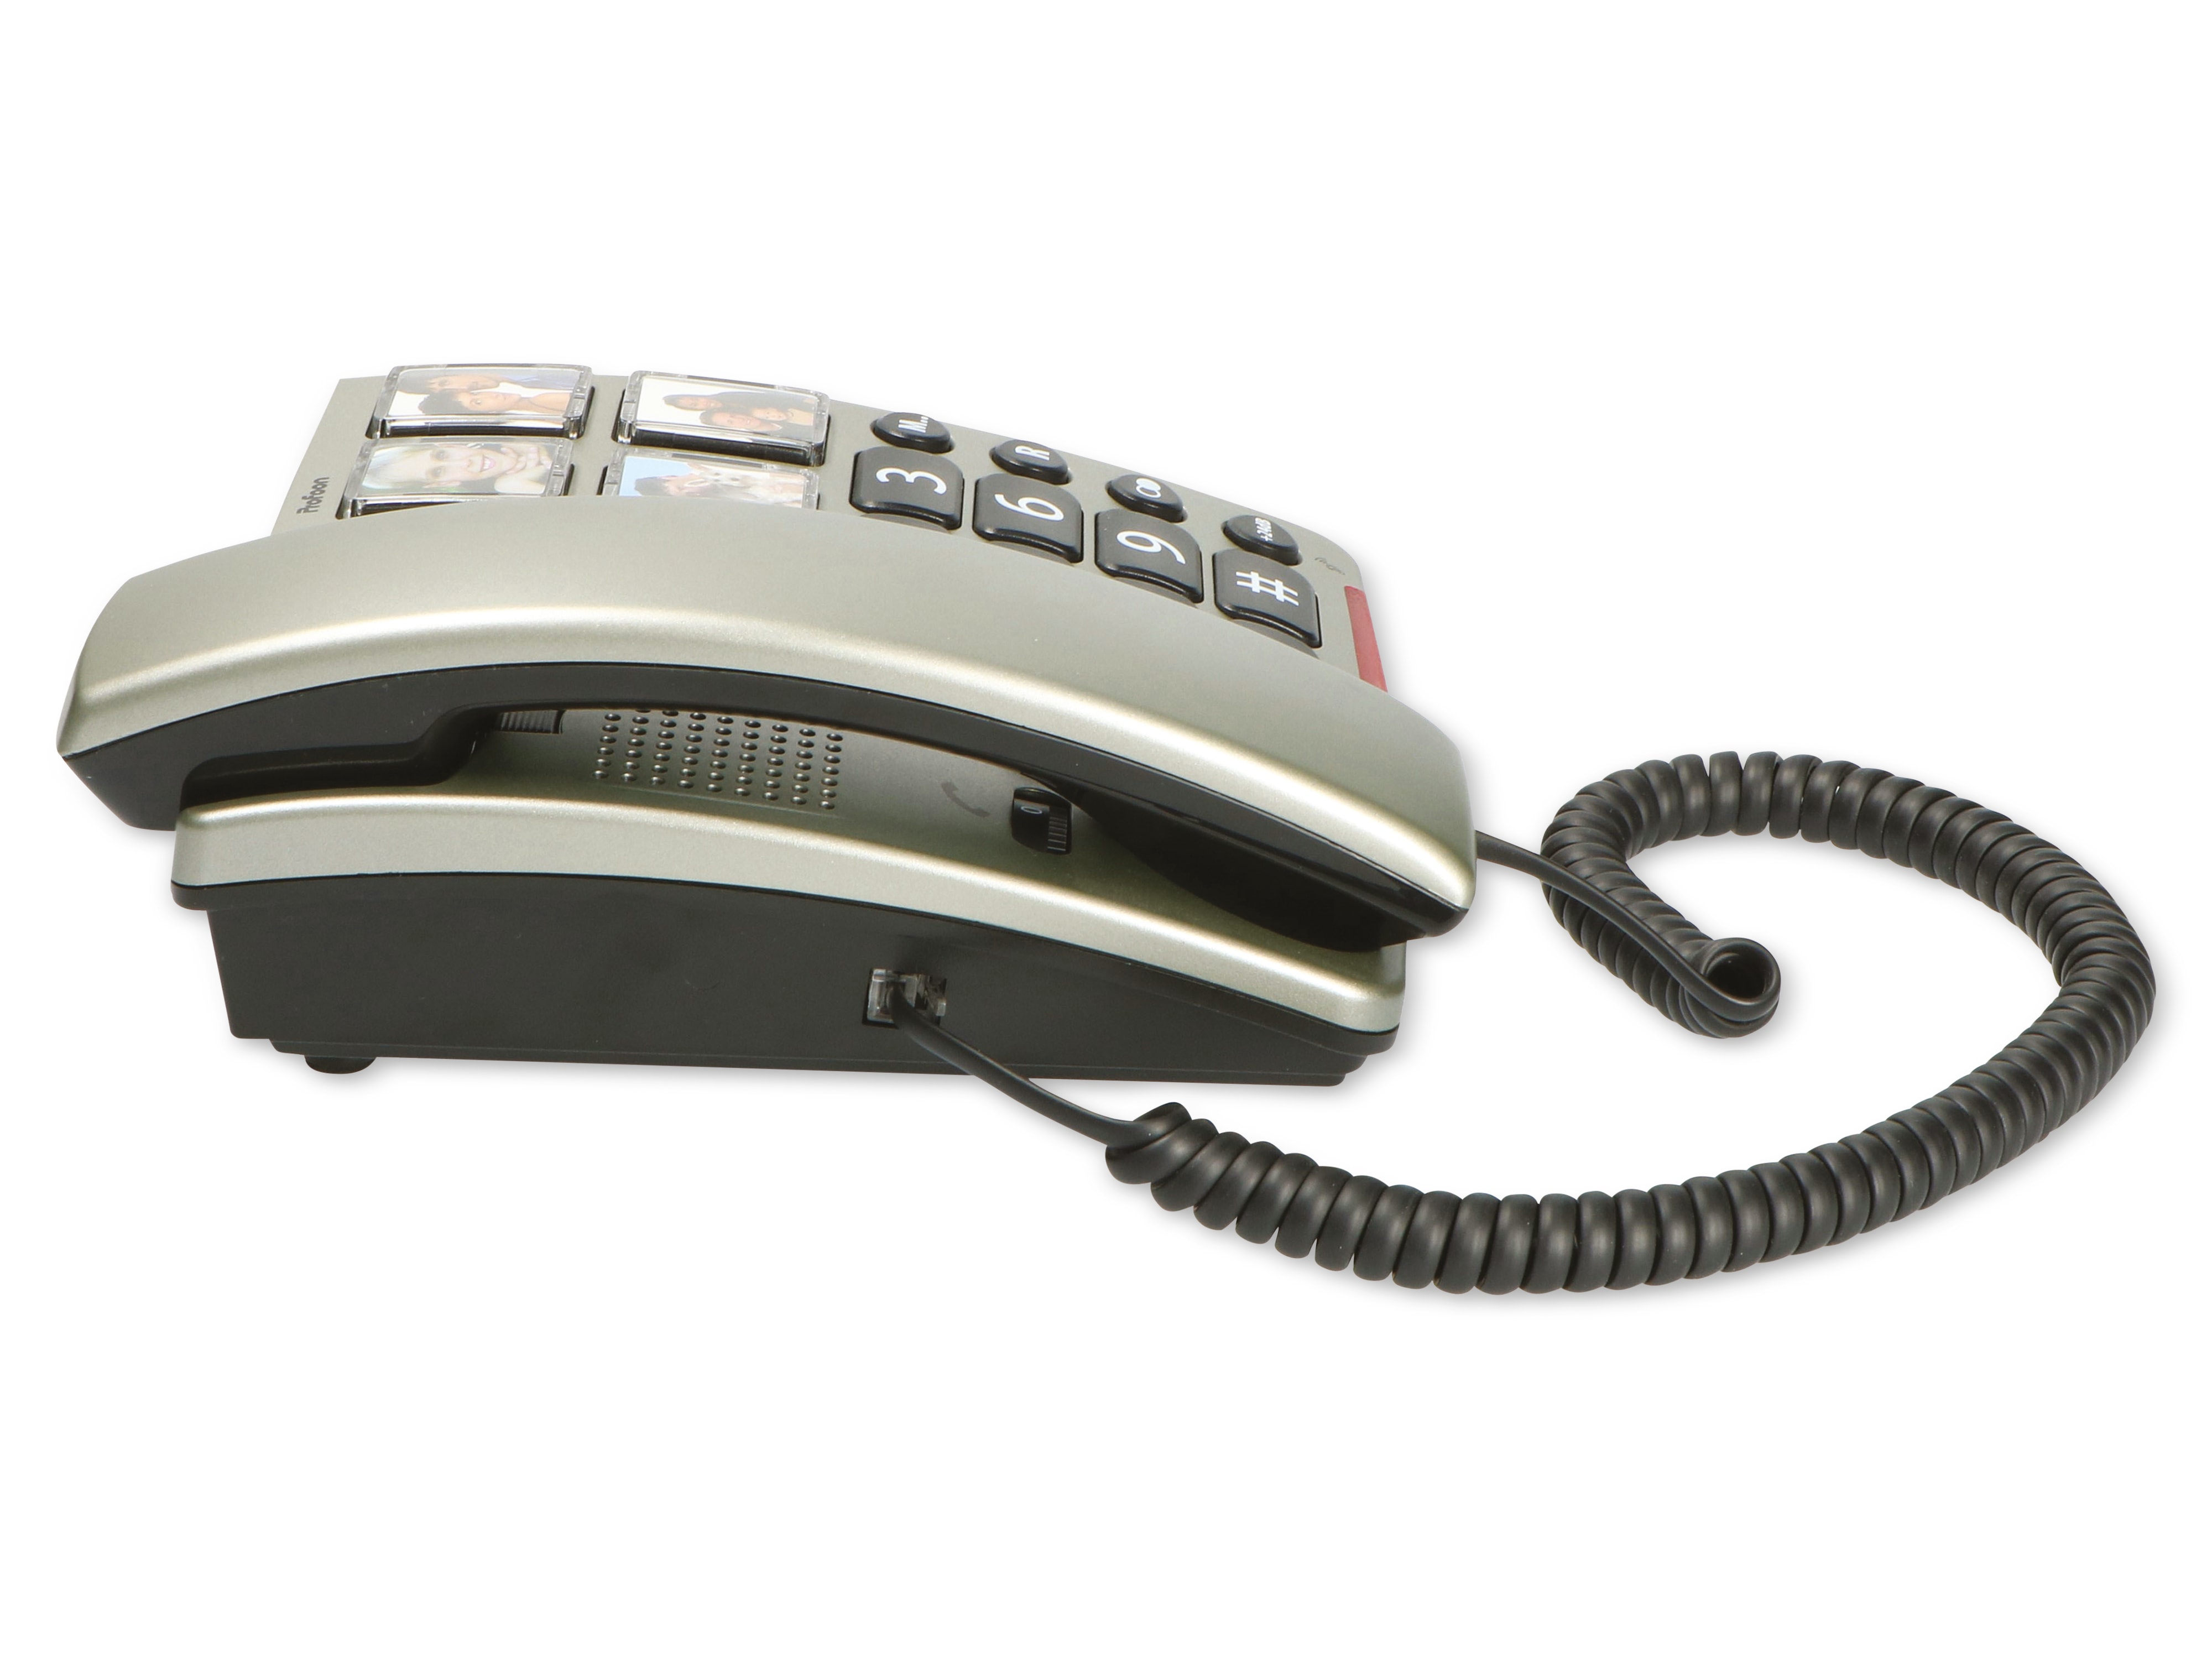 PROFOON Großtasten-Telefon TX-560, mit Fototasten, schwarz